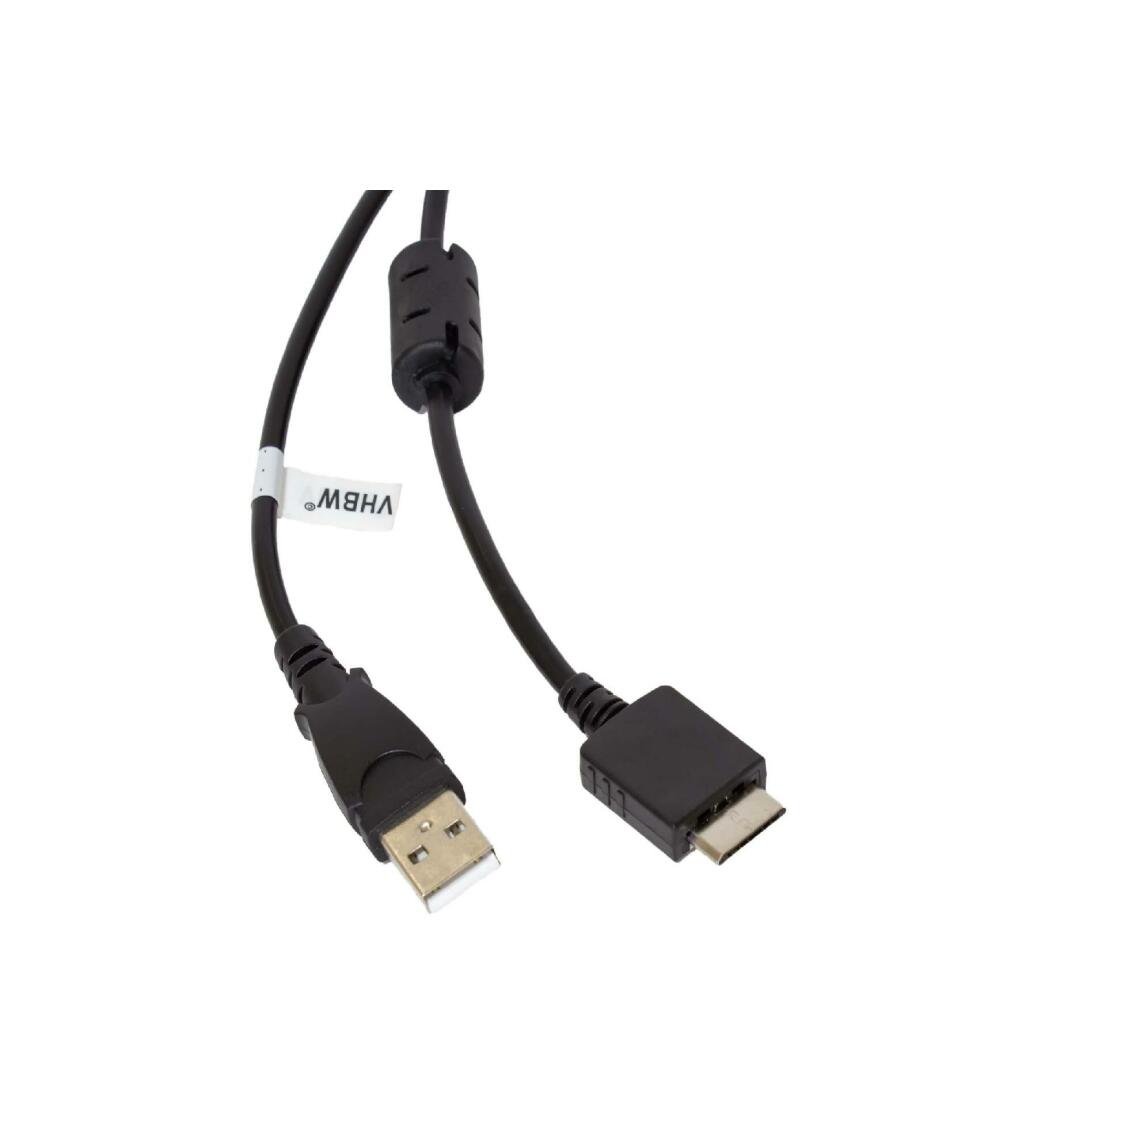 Vhbw - vhbw câble de données USB (type A sur lecteur MP3) câble de chargement compatible avec Sony Walkman NWZ-S615FRED lecteur MP3 - noir, 150cm - Alimentation modulaire